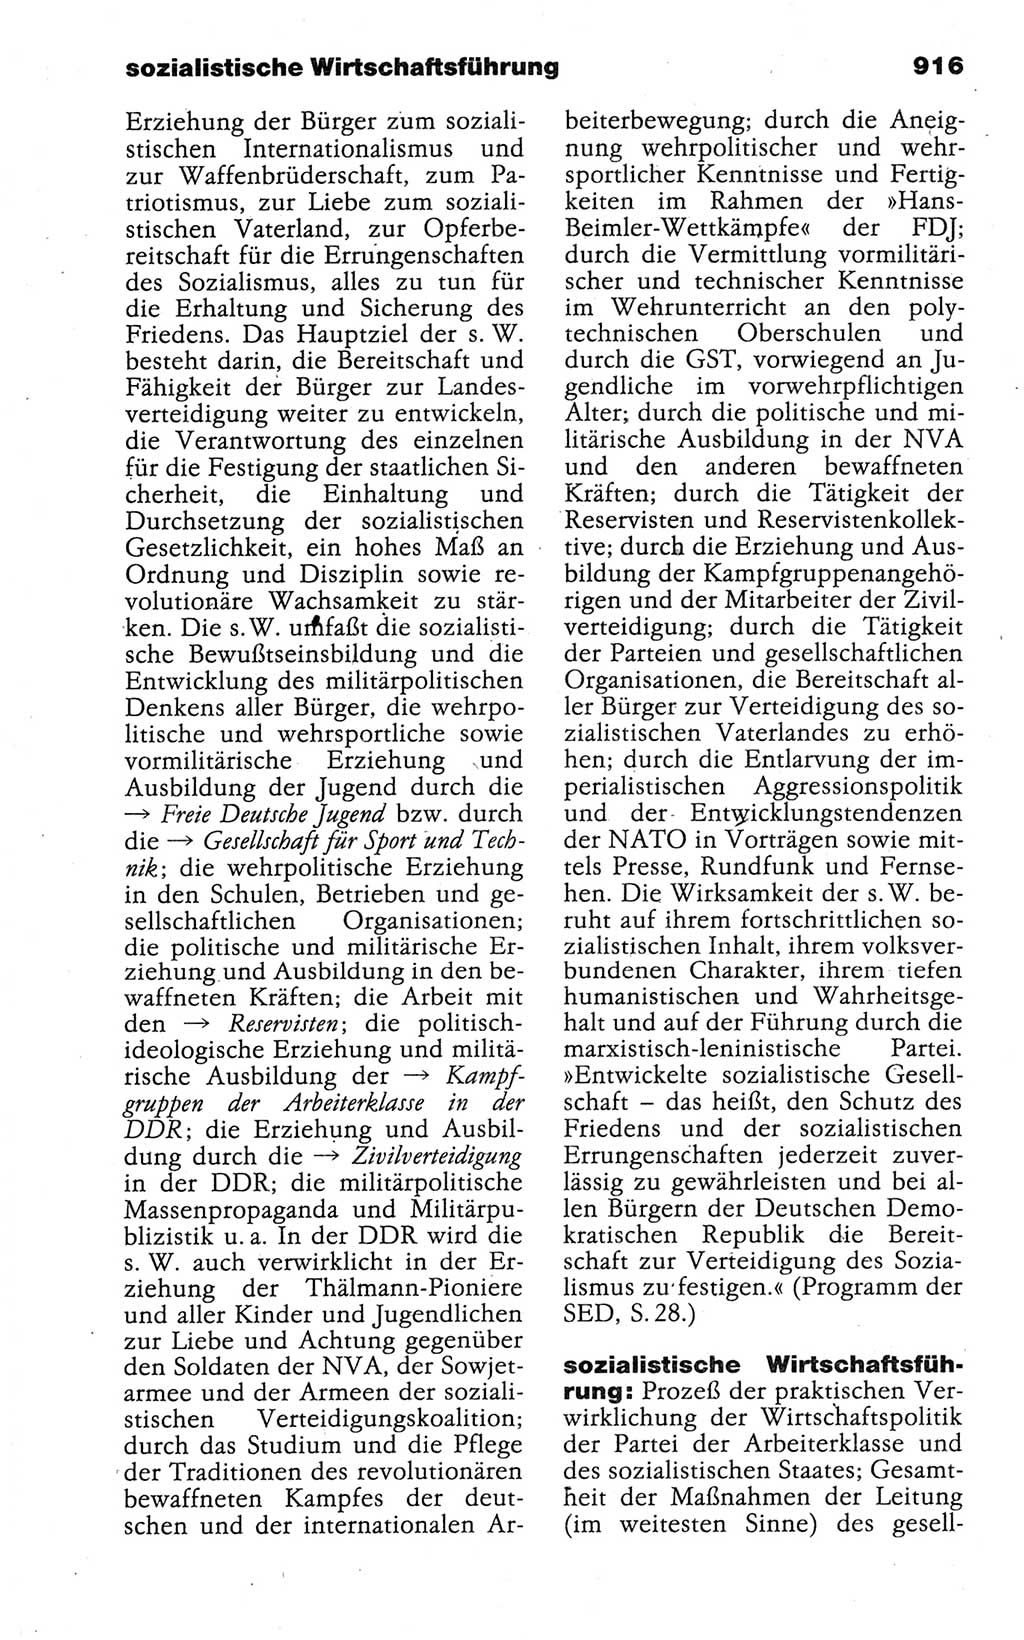 Kleines politisches Wörterbuch [Deutsche Demokratische Republik (DDR)] 1988, Seite 916 (Kl. pol. Wb. DDR 1988, S. 916)